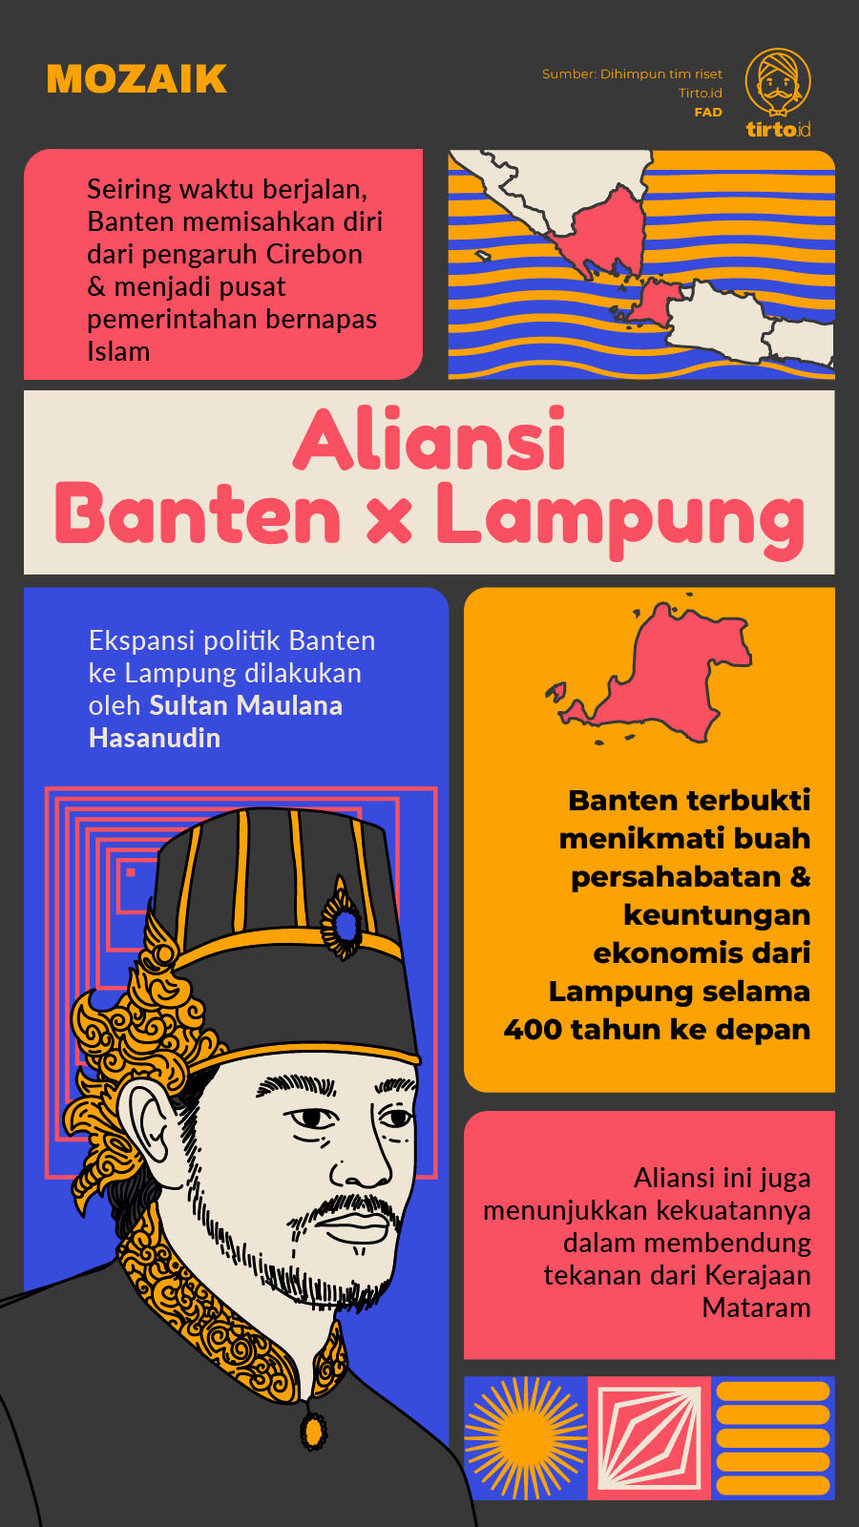 Infografik Mozaik Aliansi Banten Lampung